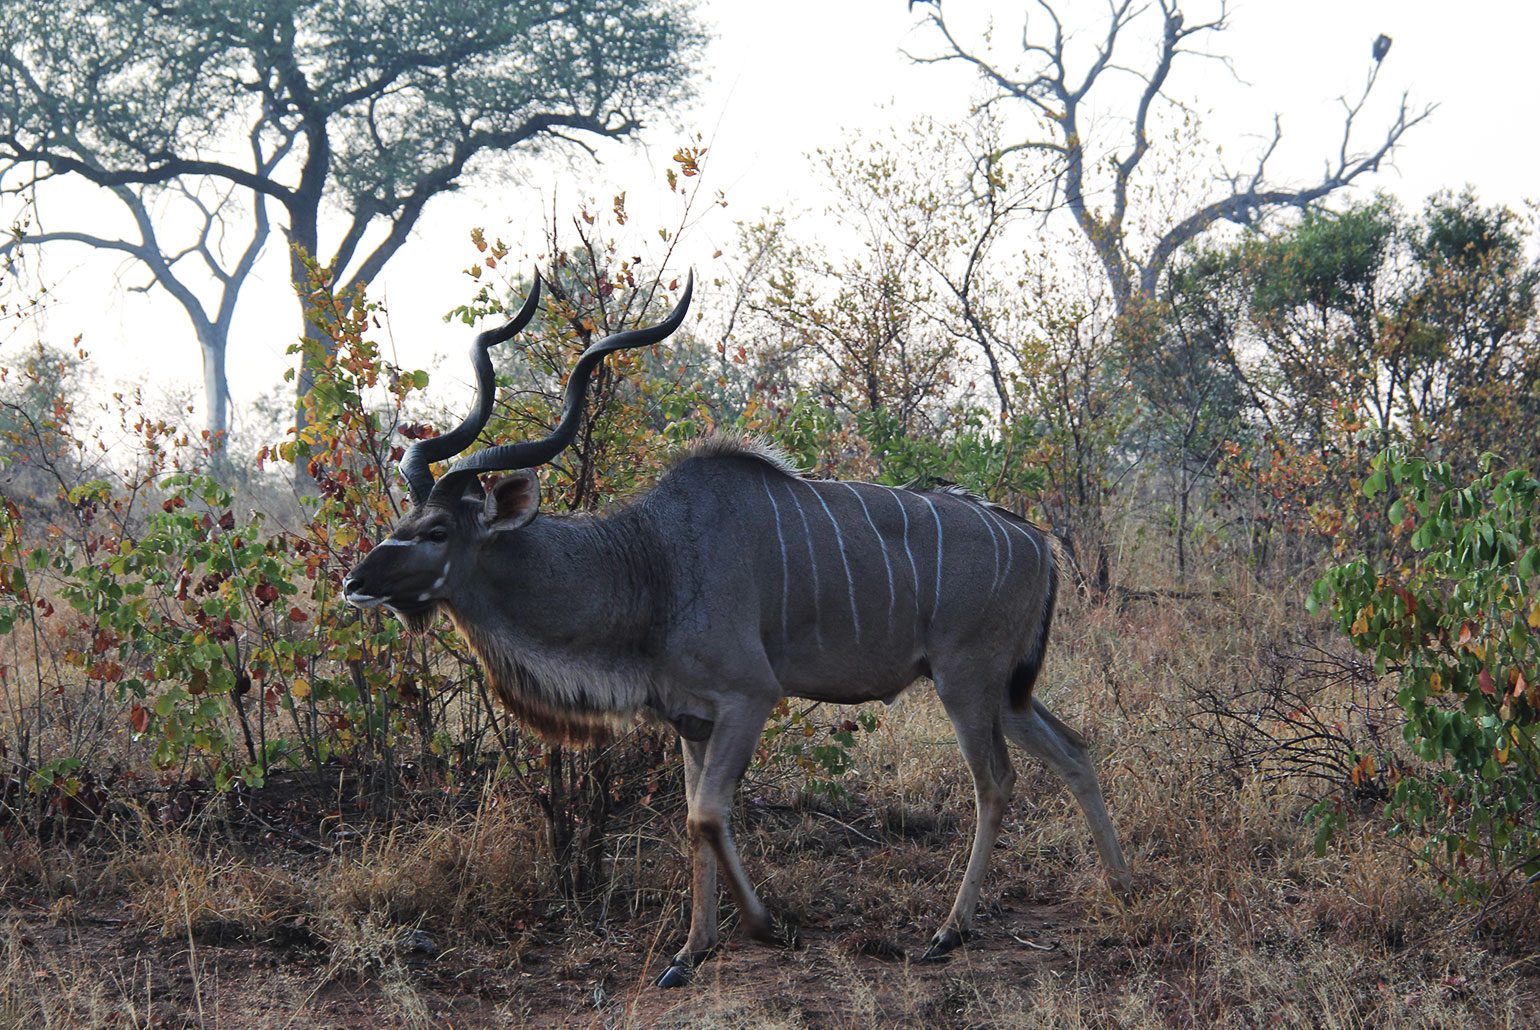 Fazer um safari é ter a chance de encontrar animais nunca vistos antes, como o cudo (kudu, no inglês)